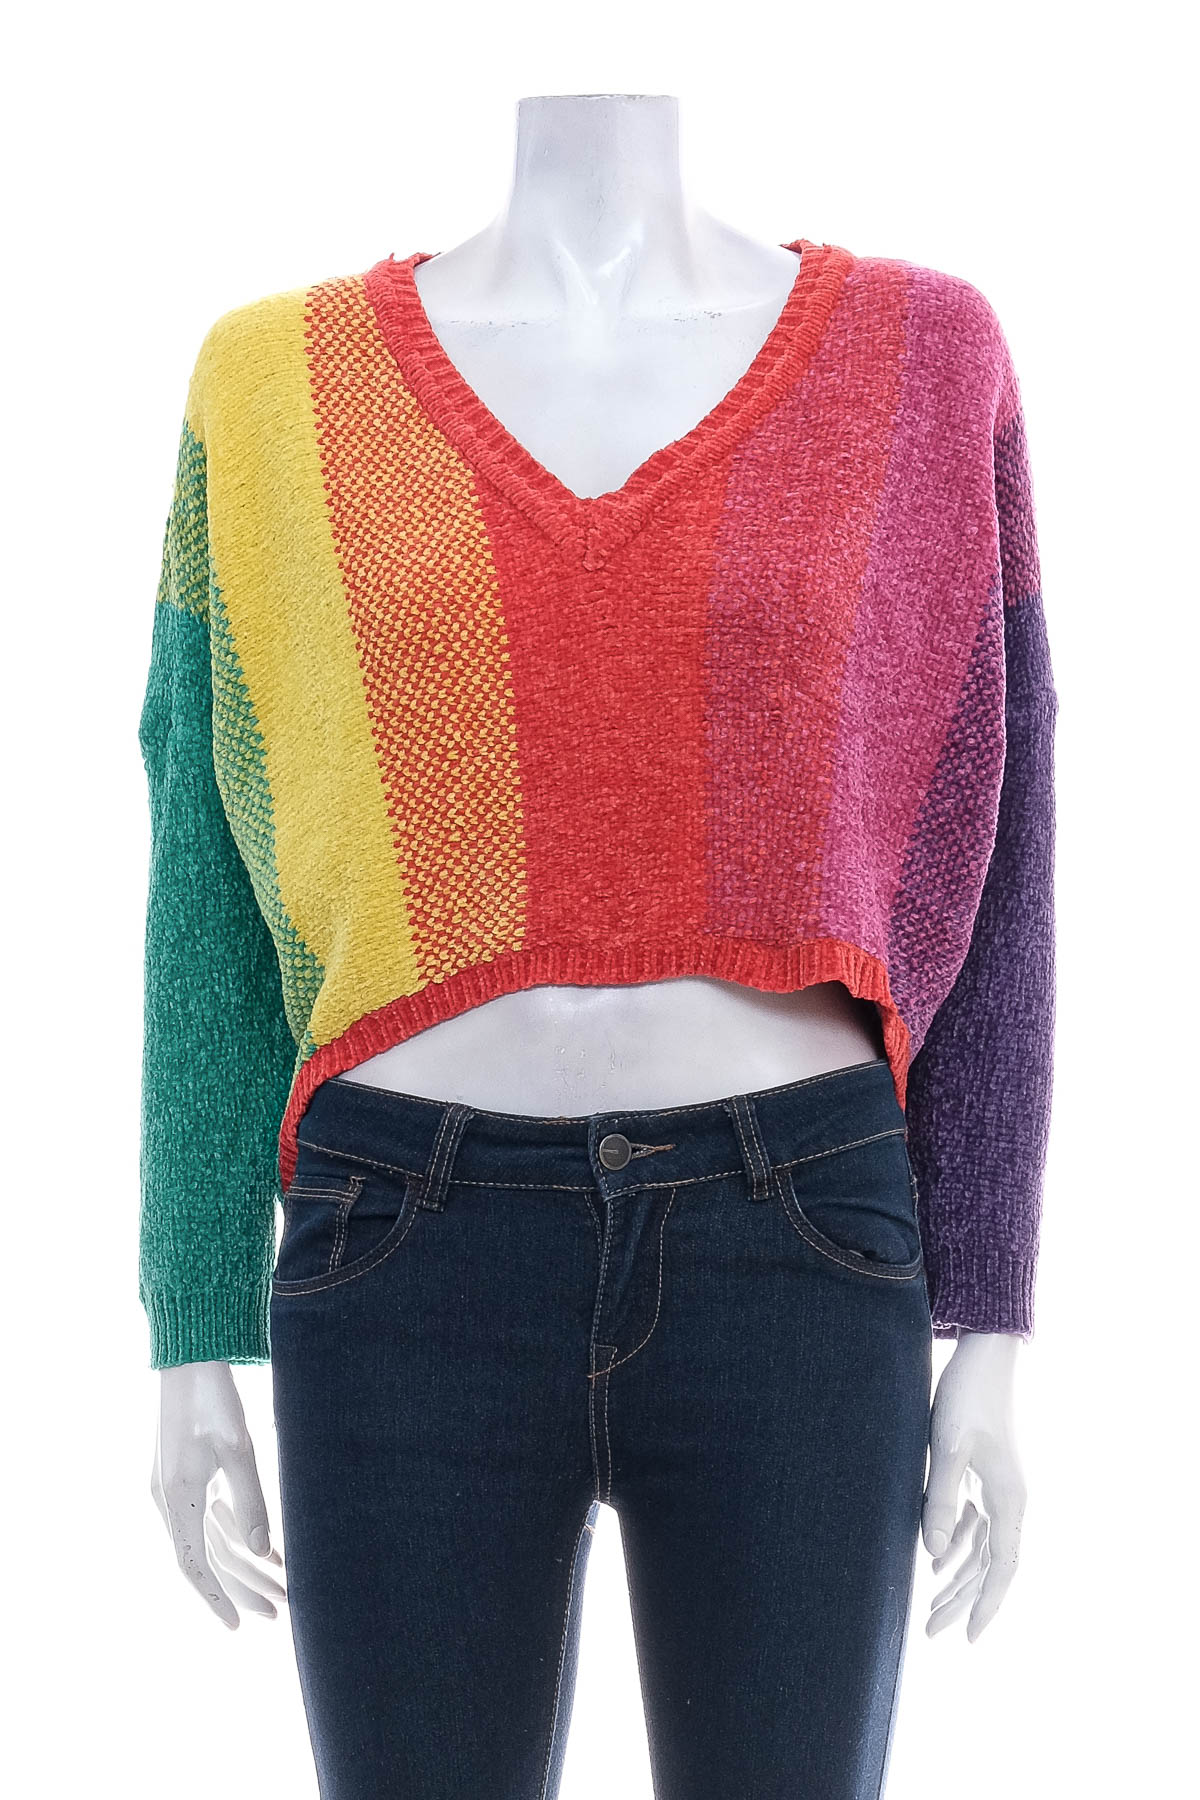 Women's sweater - Luv Lane - 0